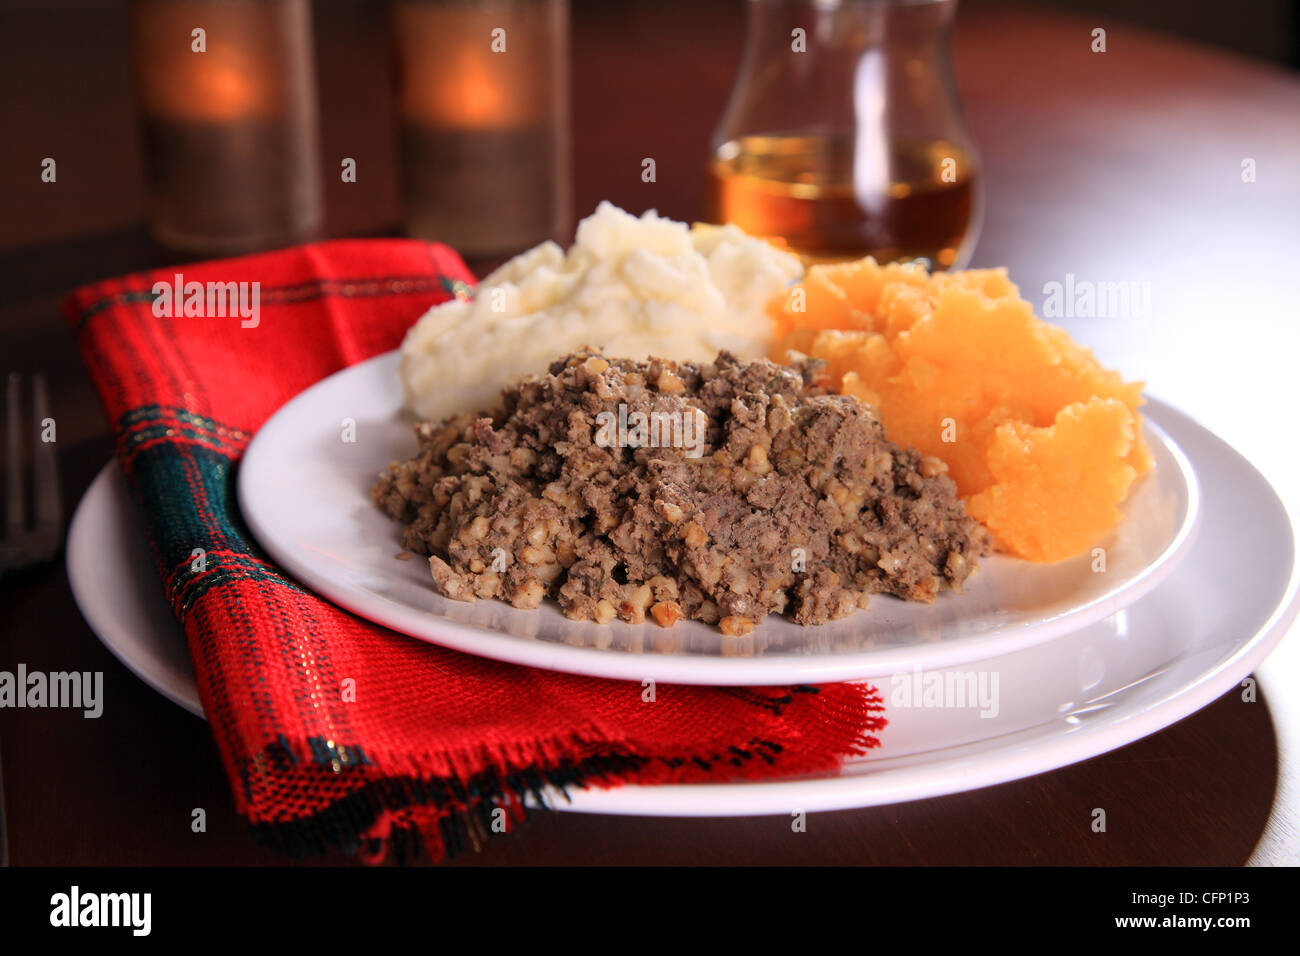 Traditionellen Schottischen Haggis Abendessen Abendessen Fur Ein Robert Burns Night Dinner Feier Auf Der Schottische Dichter Geburtstag Januar 25 Stockfotografie Alamy